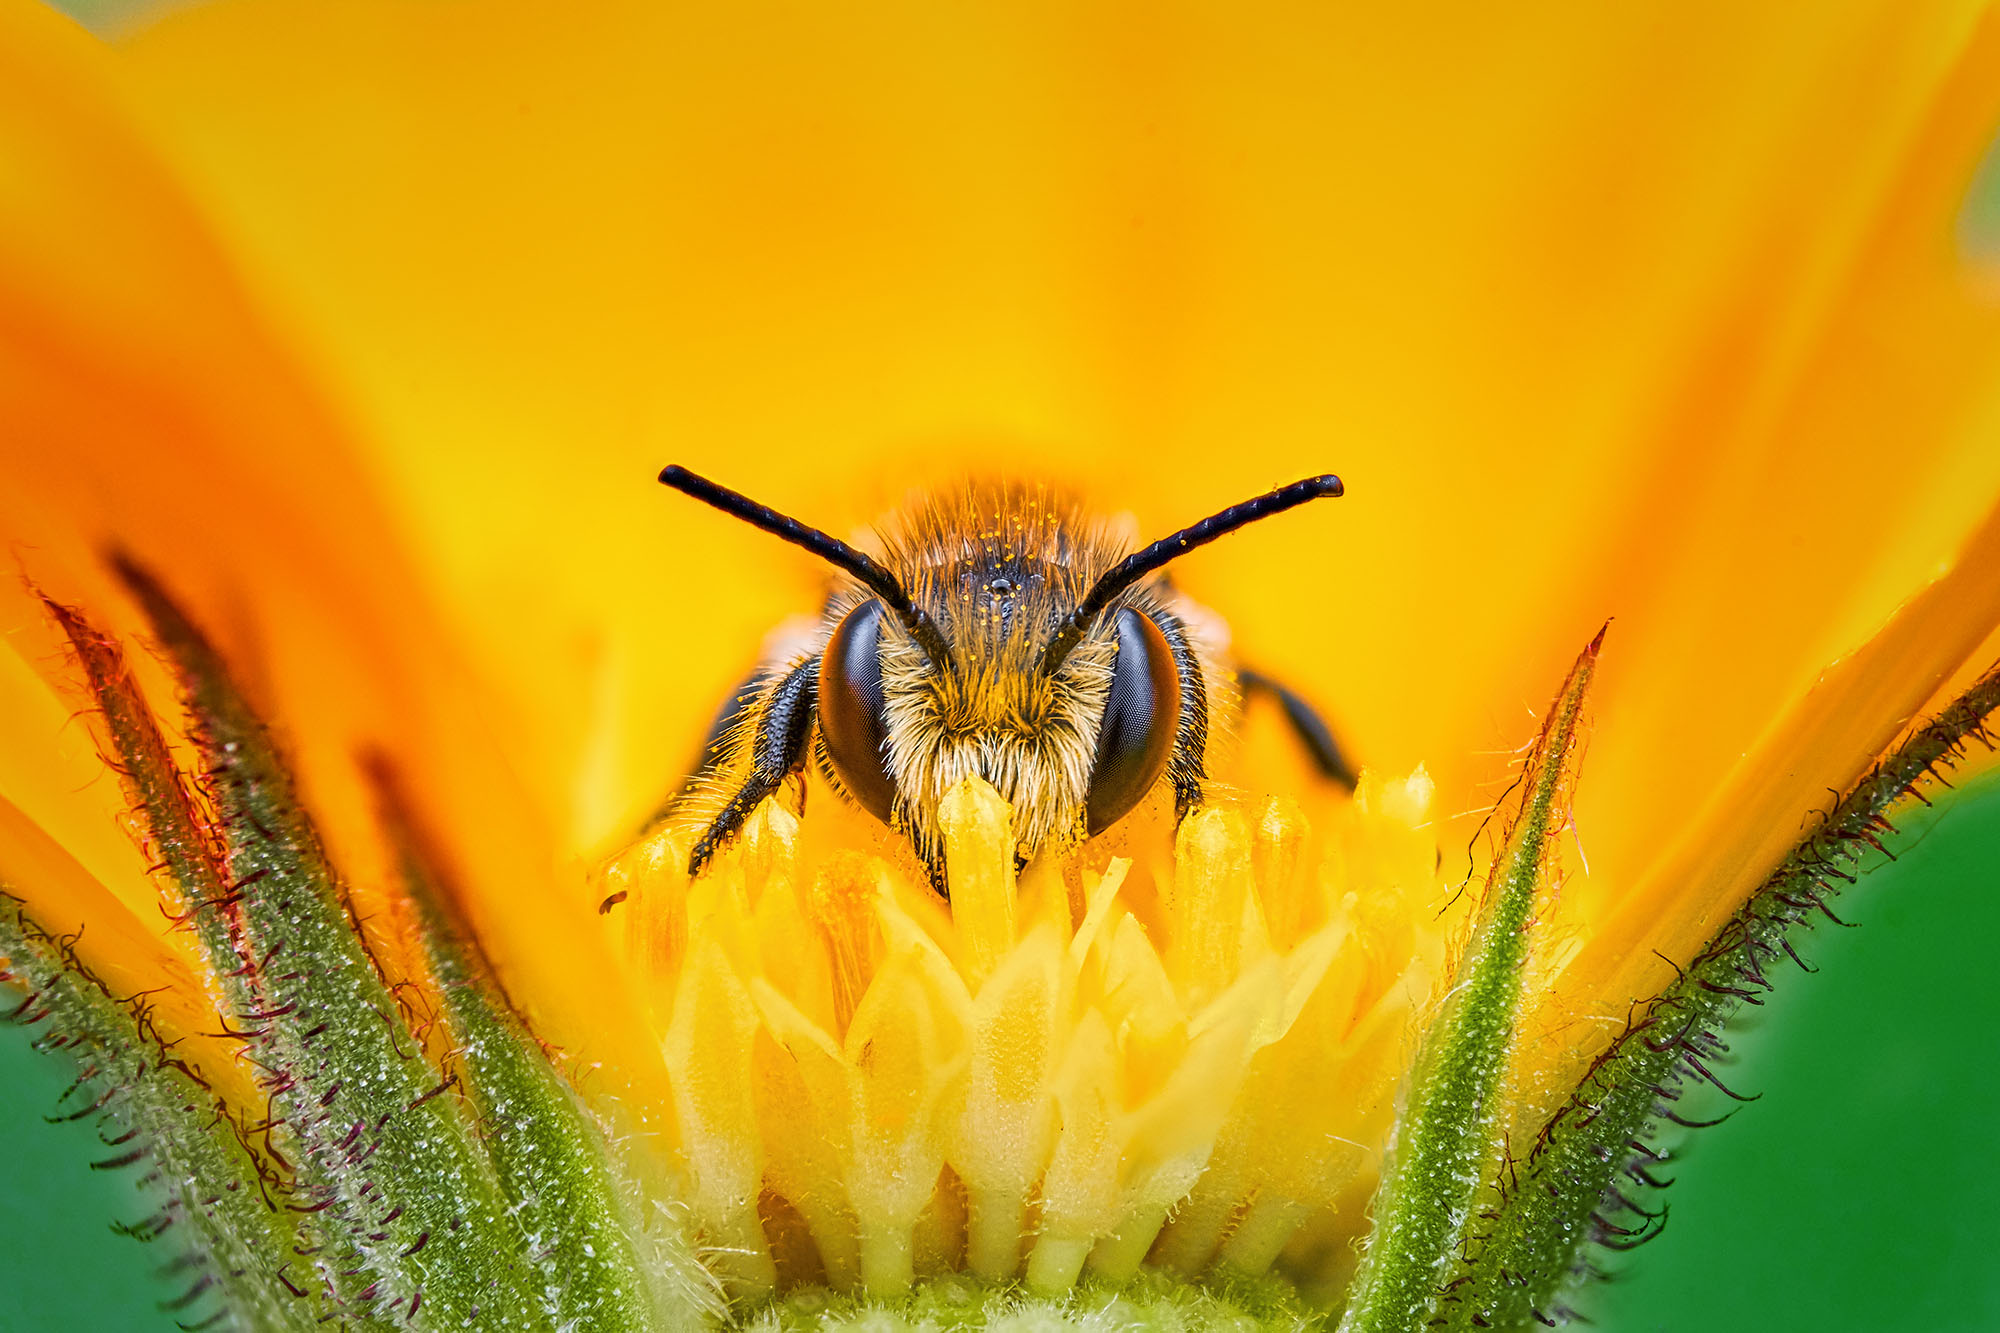 Cette abeille sauvage, appelée osmie cormue, ou Osmia&nbsp;cornuta, est présente dans toute l'Europe. À&nbsp;part les pays nordiques, elle fait partie des nombreuses espèces d'abeilles solitaires. Elle tire son nom de ces deux&nbsp;« cornes » que la femelle arbore sur le clypeus (front). Mais aussi de son mode de vie : l'osmie cornue ne vit pas en colonie. Si l'on ne trouve plus ces insectes près des zones d'agriculture intensive, donc peu dans le milieu rural, on peut néanmoins en observer dans des zones urbaines, notamment dans les jardins, près des potagers. Elles apprécient aussi beaucoup les arbres à insectes ! Elles effectuent durant une journée entre 70 et 100 voyages de butinage, pour un total de quatorze heures par jour ! D'une longévité de dix&nbsp;jours pour le mâle, ou six&nbsp;semaines pour la femelle, les osmies cornues passent la majorité de leur vie à assurer leur descendance, donc à pondre. © Pierre Anquet, tous droits réservés&nbsp;